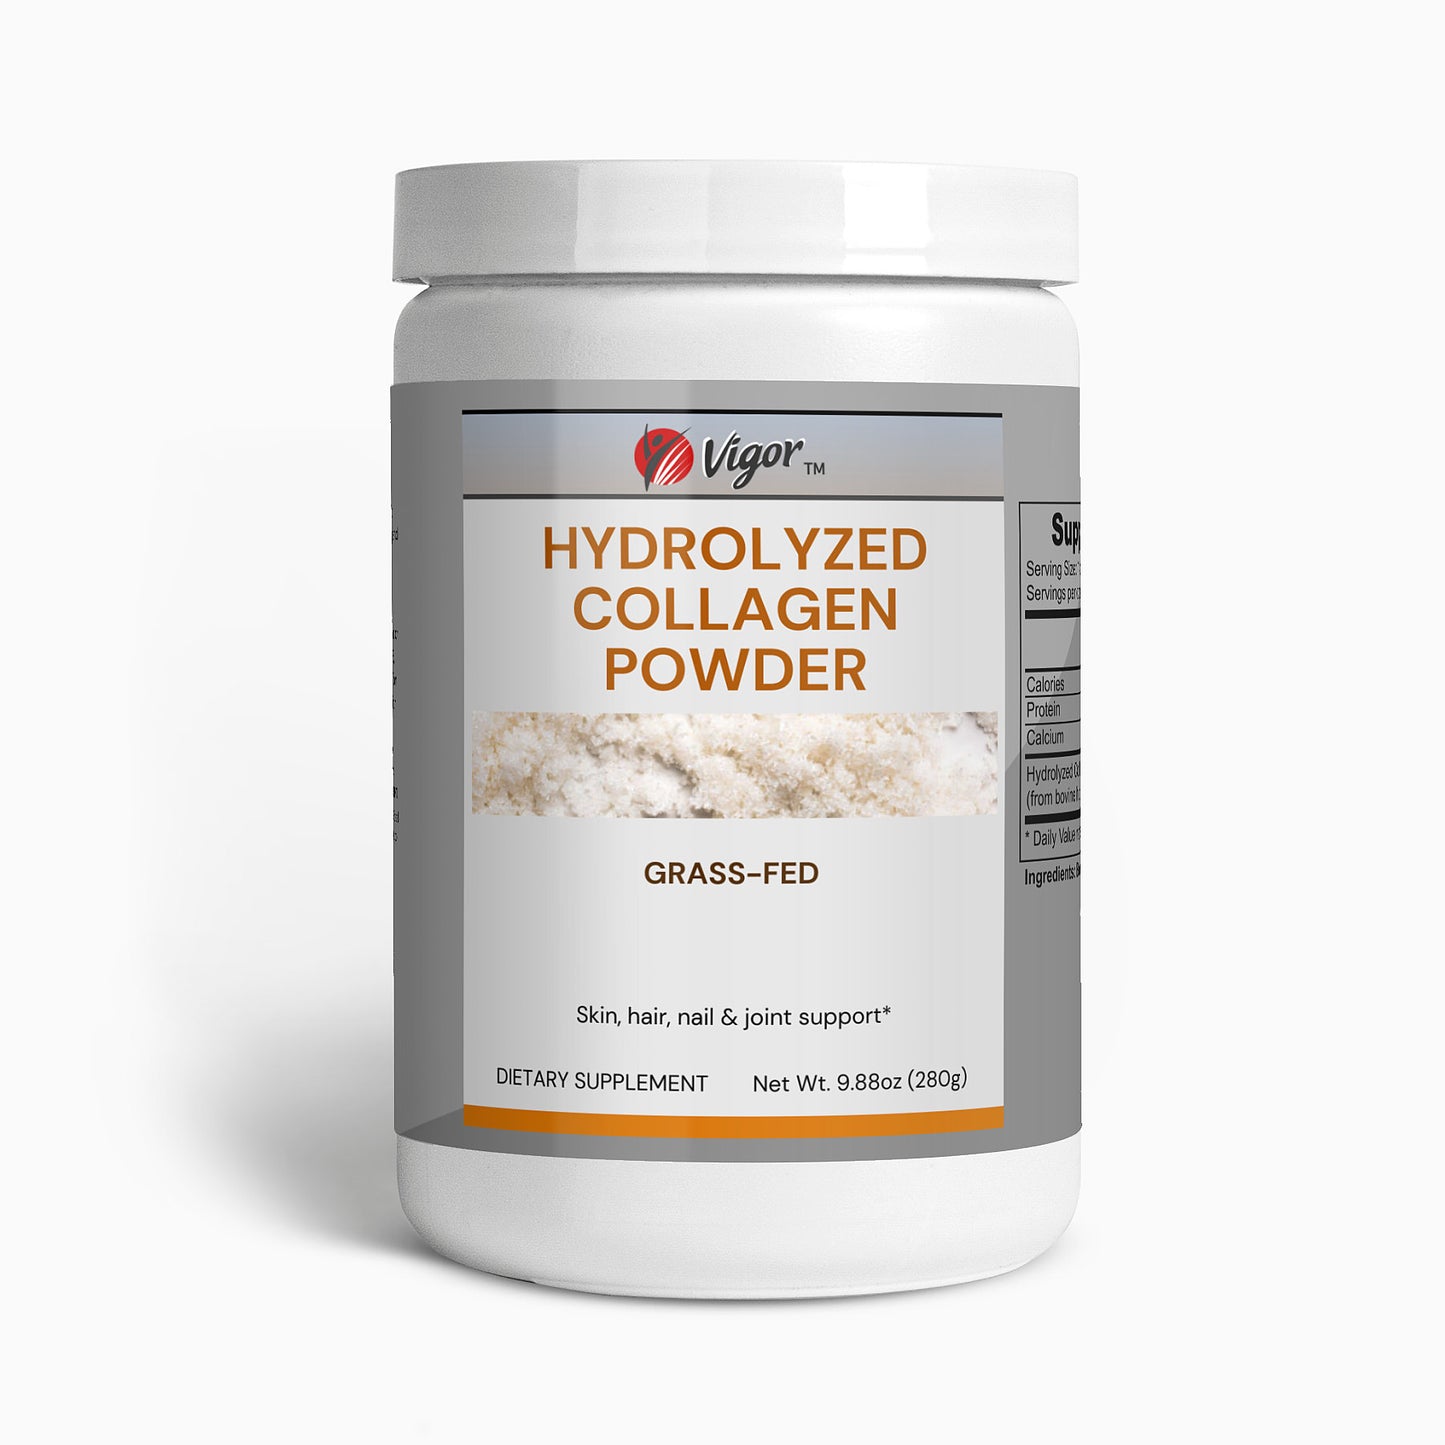 Grass-Fed Hydrolyzed Collagen Powder